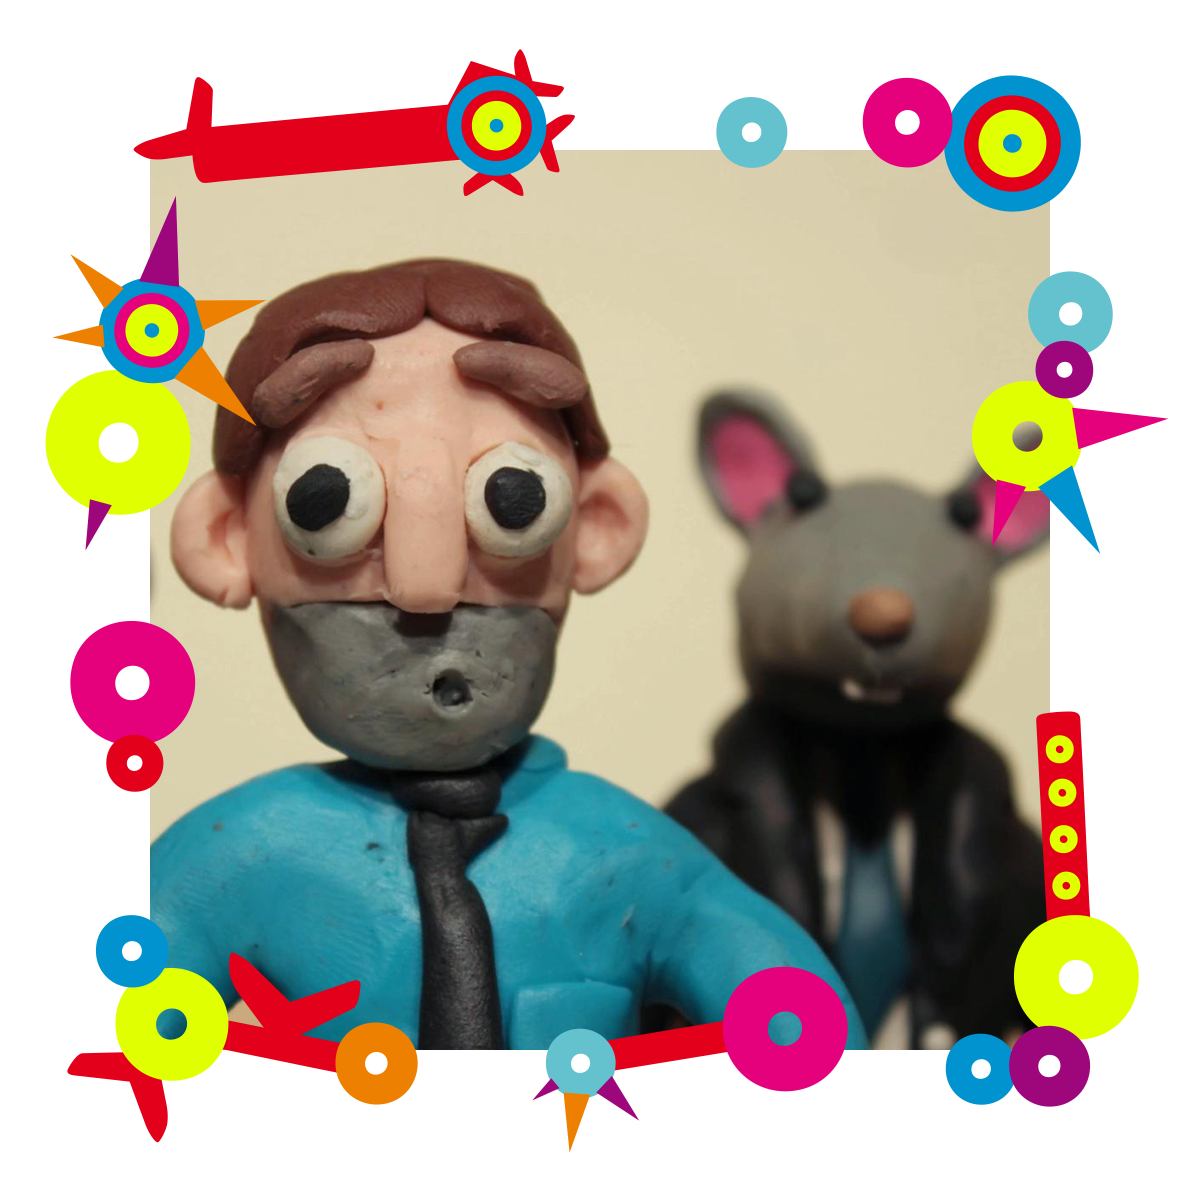 Na zdjęciu dwa ludziki zrobione z plasteliny - mężczyzna oraz ludzik z głową myszy. Dookoła zdjęcia kolorowa grafika.